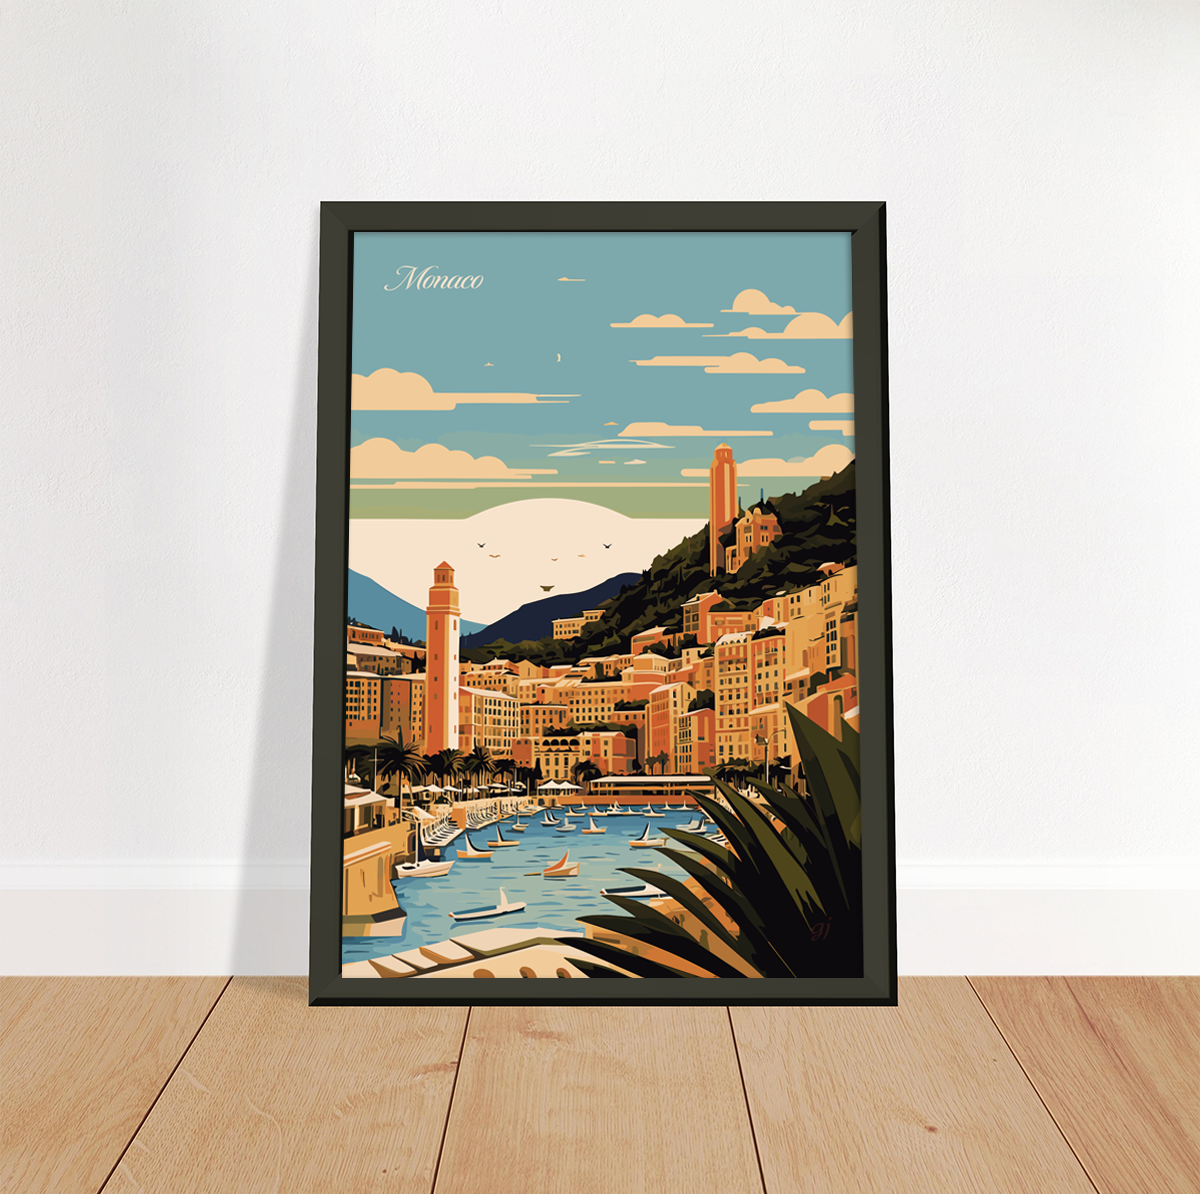 Monaco poster by bon voyage design